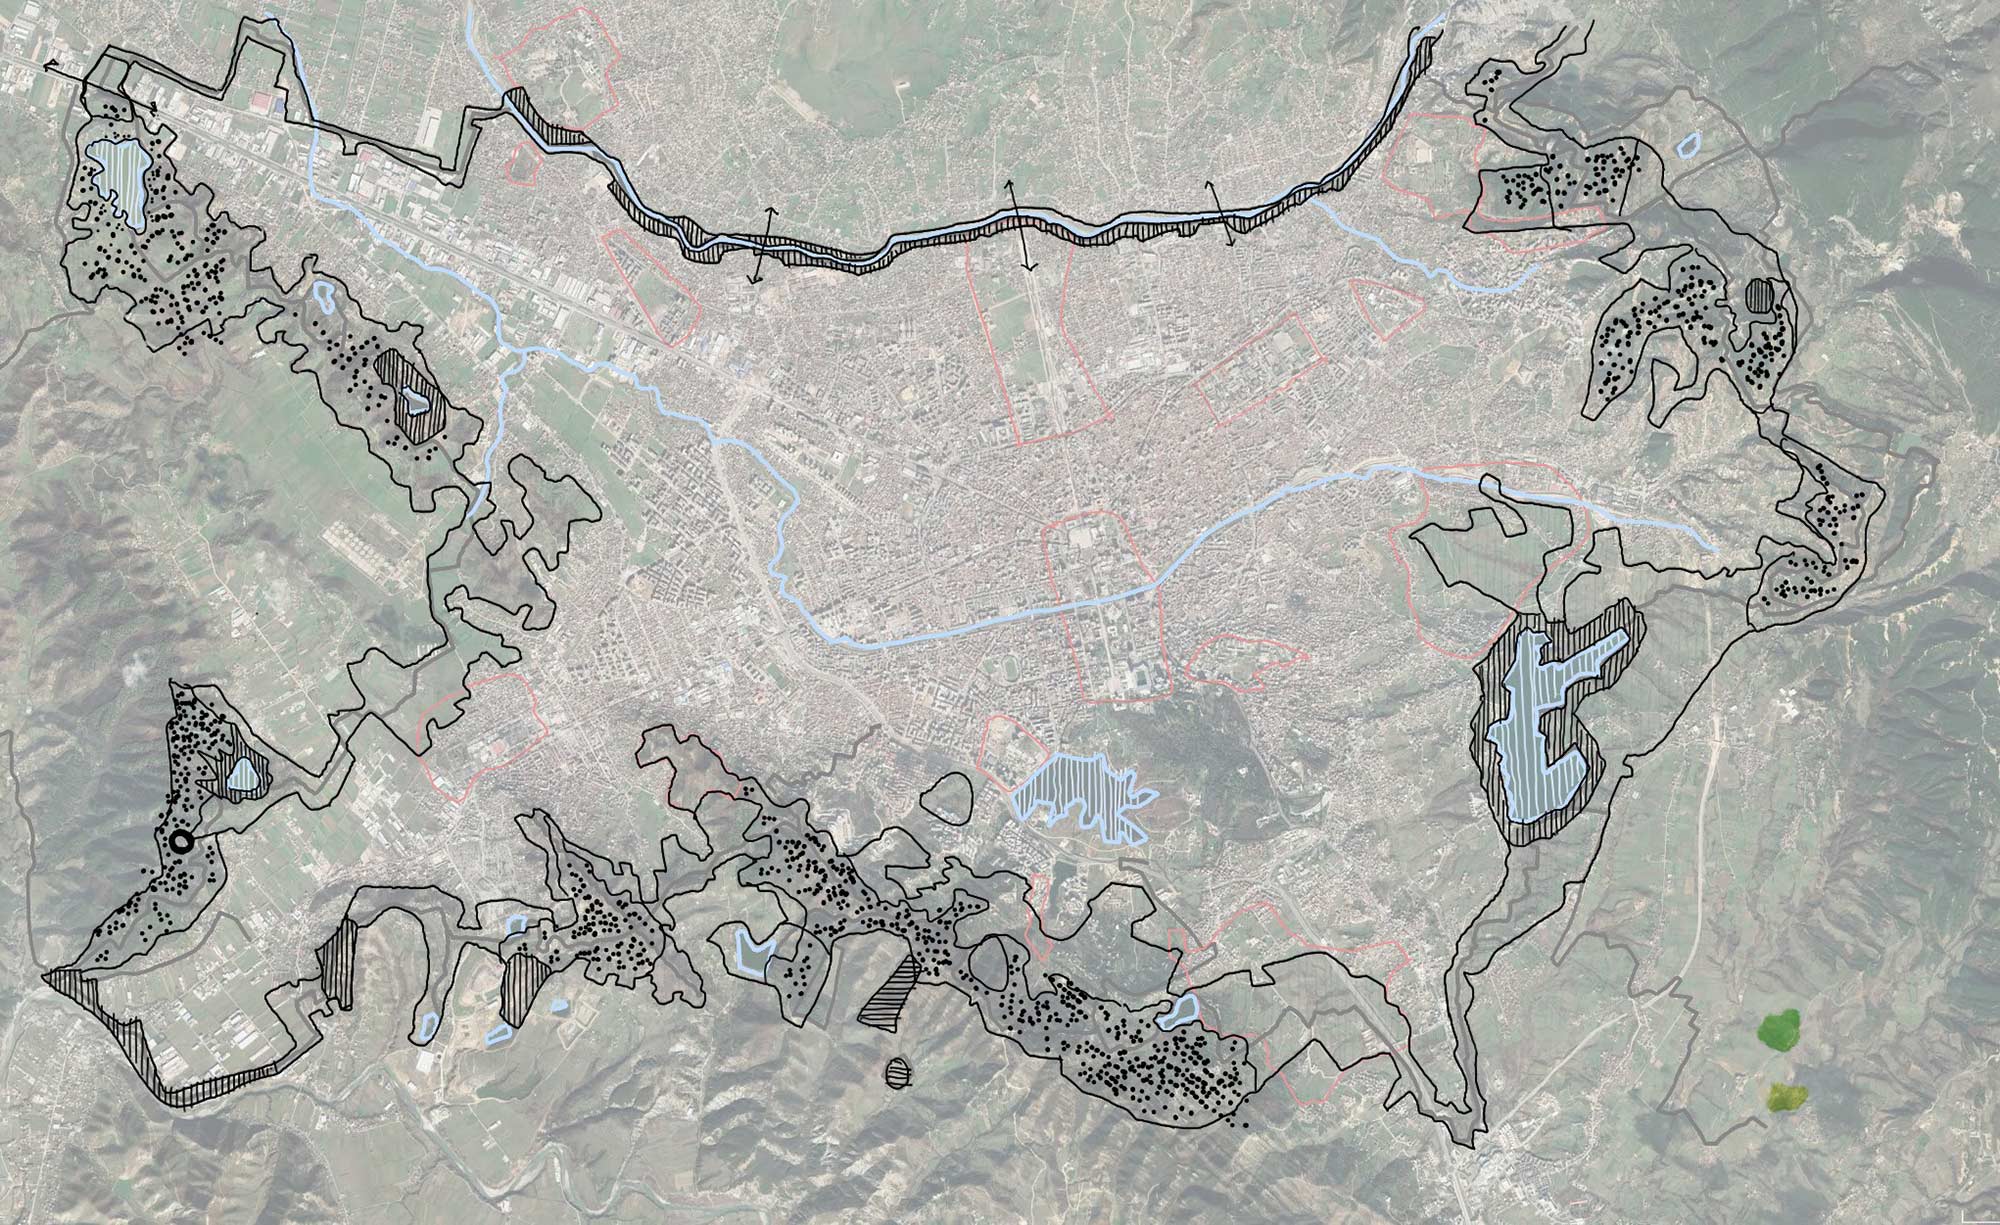 Tirana orbital forest masterplan